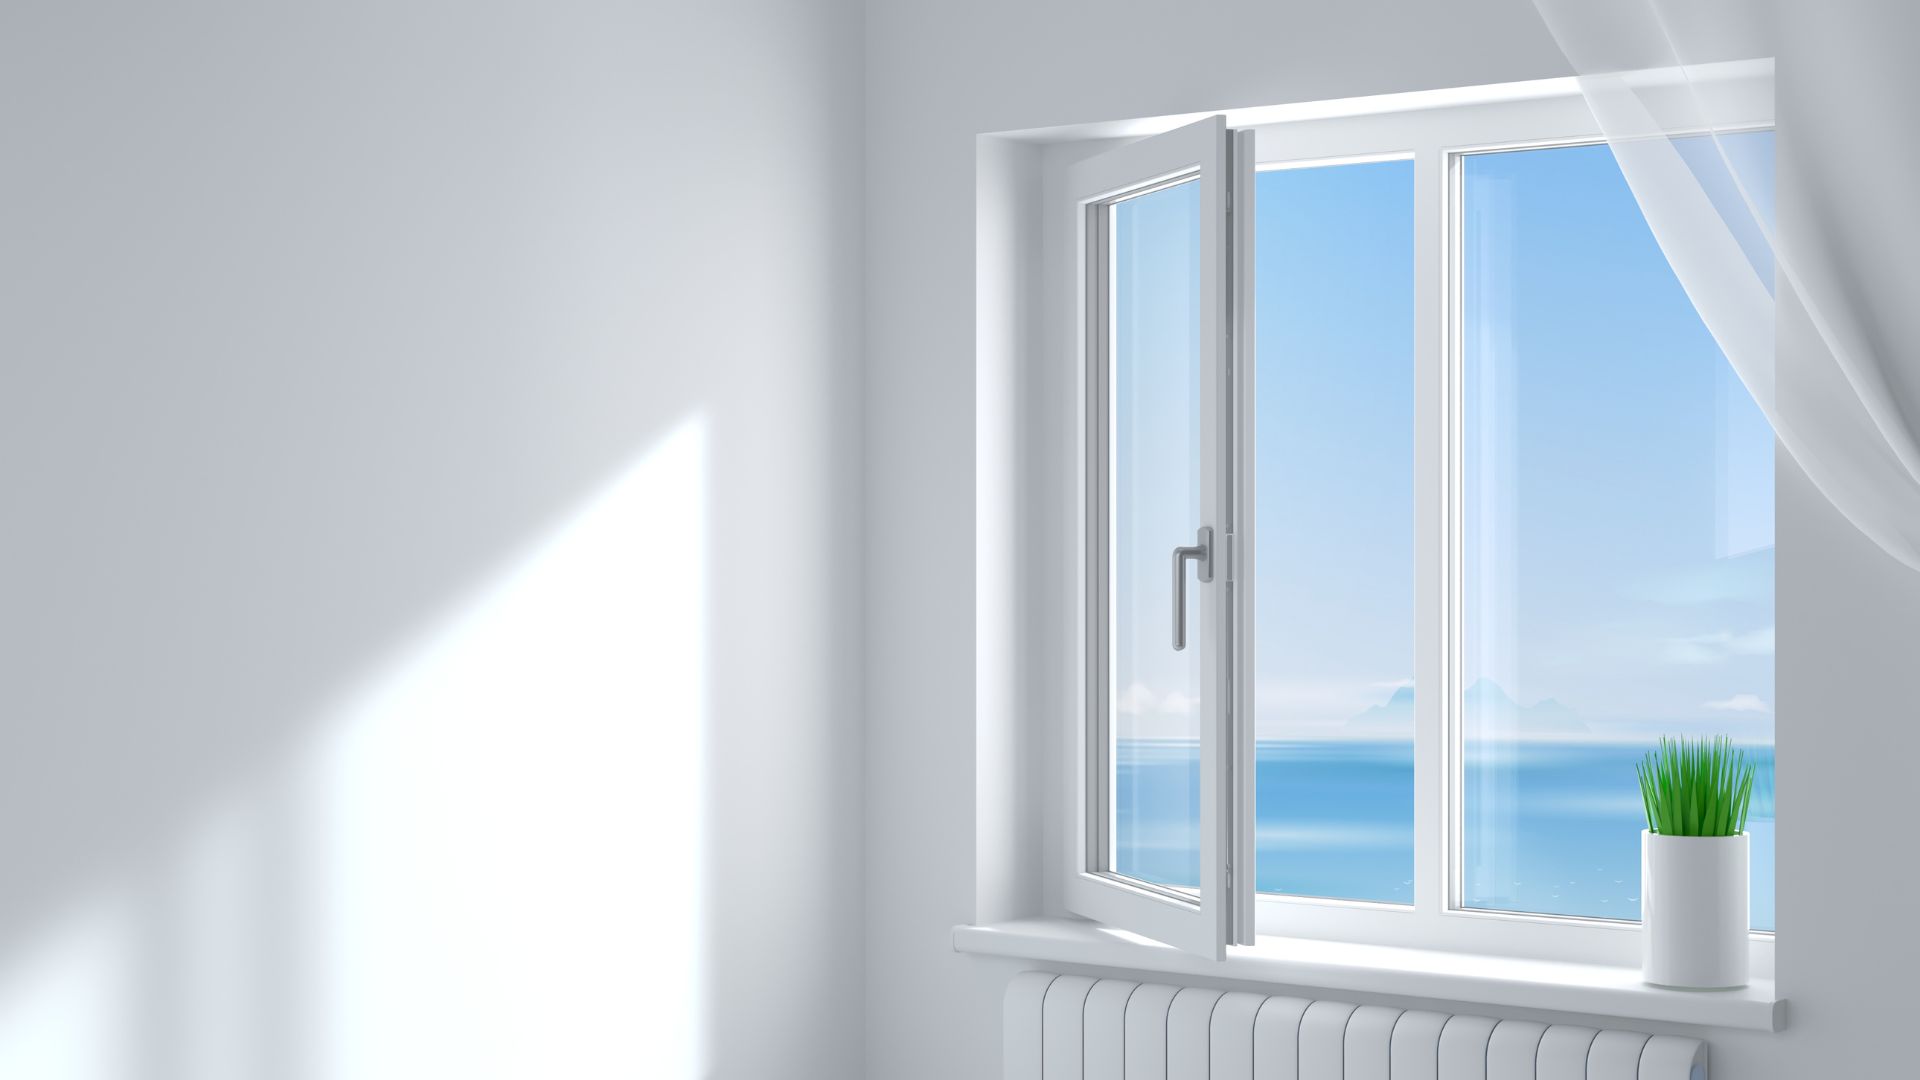 Évaluer la transparence et la clarté des devis pour fenêtre PVC proposés